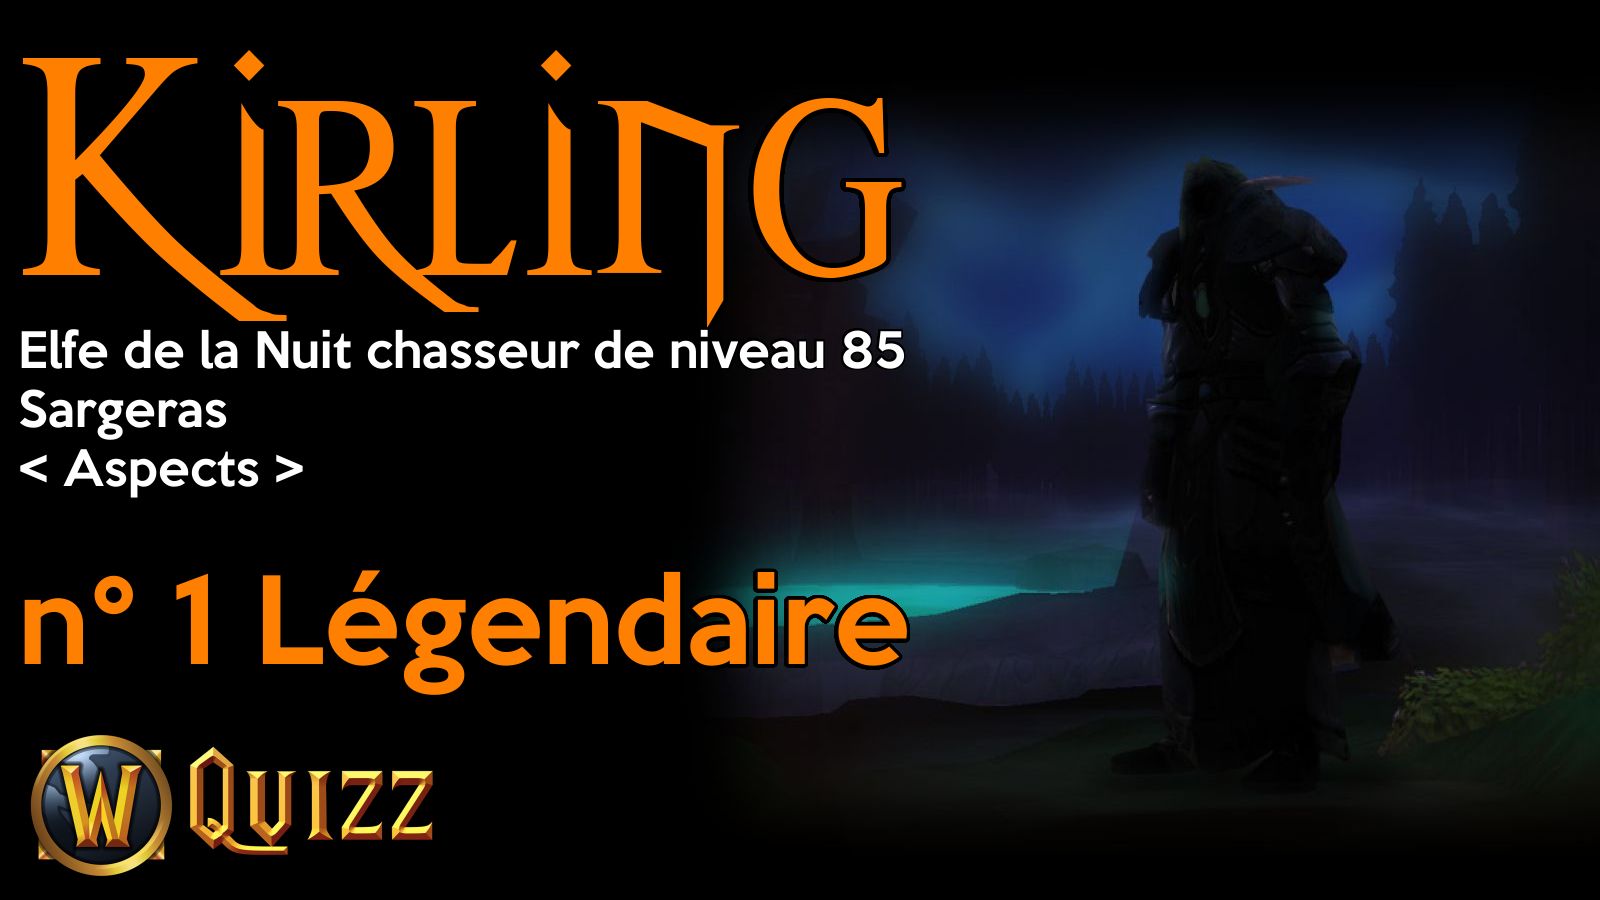 Kirling, Elfe de la Nuit chasseur de niveau 85, Sargeras